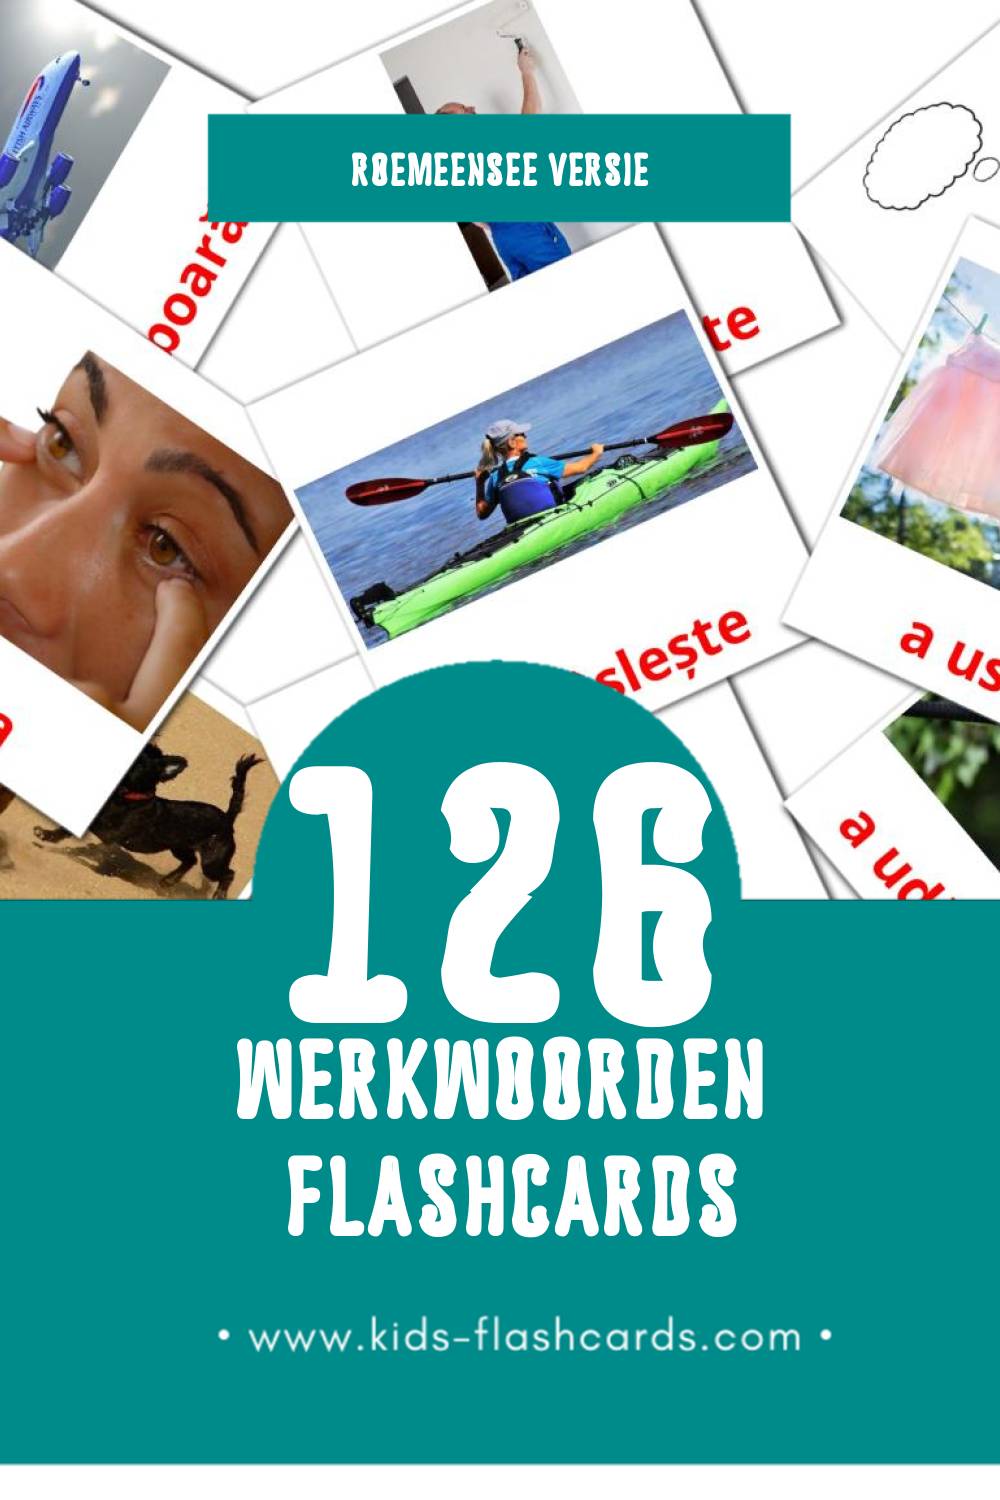 Visuele Verbe  Flashcards voor Kleuters (126 kaarten in het Roemeense)